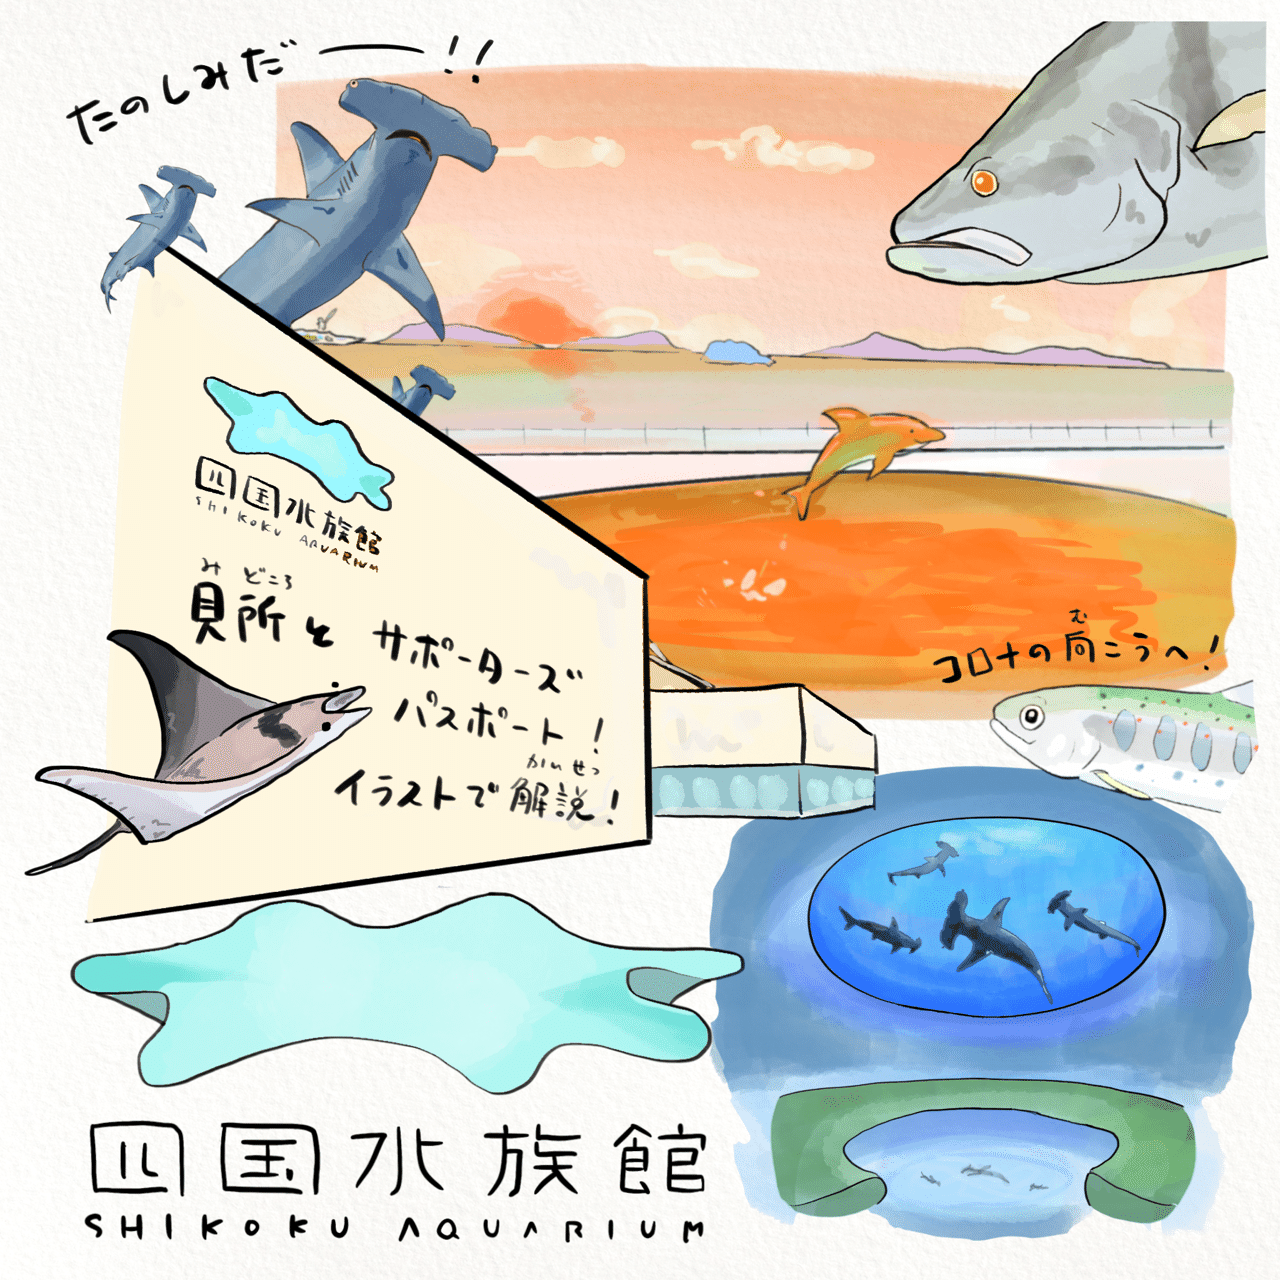 四国水族館は第3の視点から楽しめる水族館の革命だ かわちゃん さかなのおにいさん Note